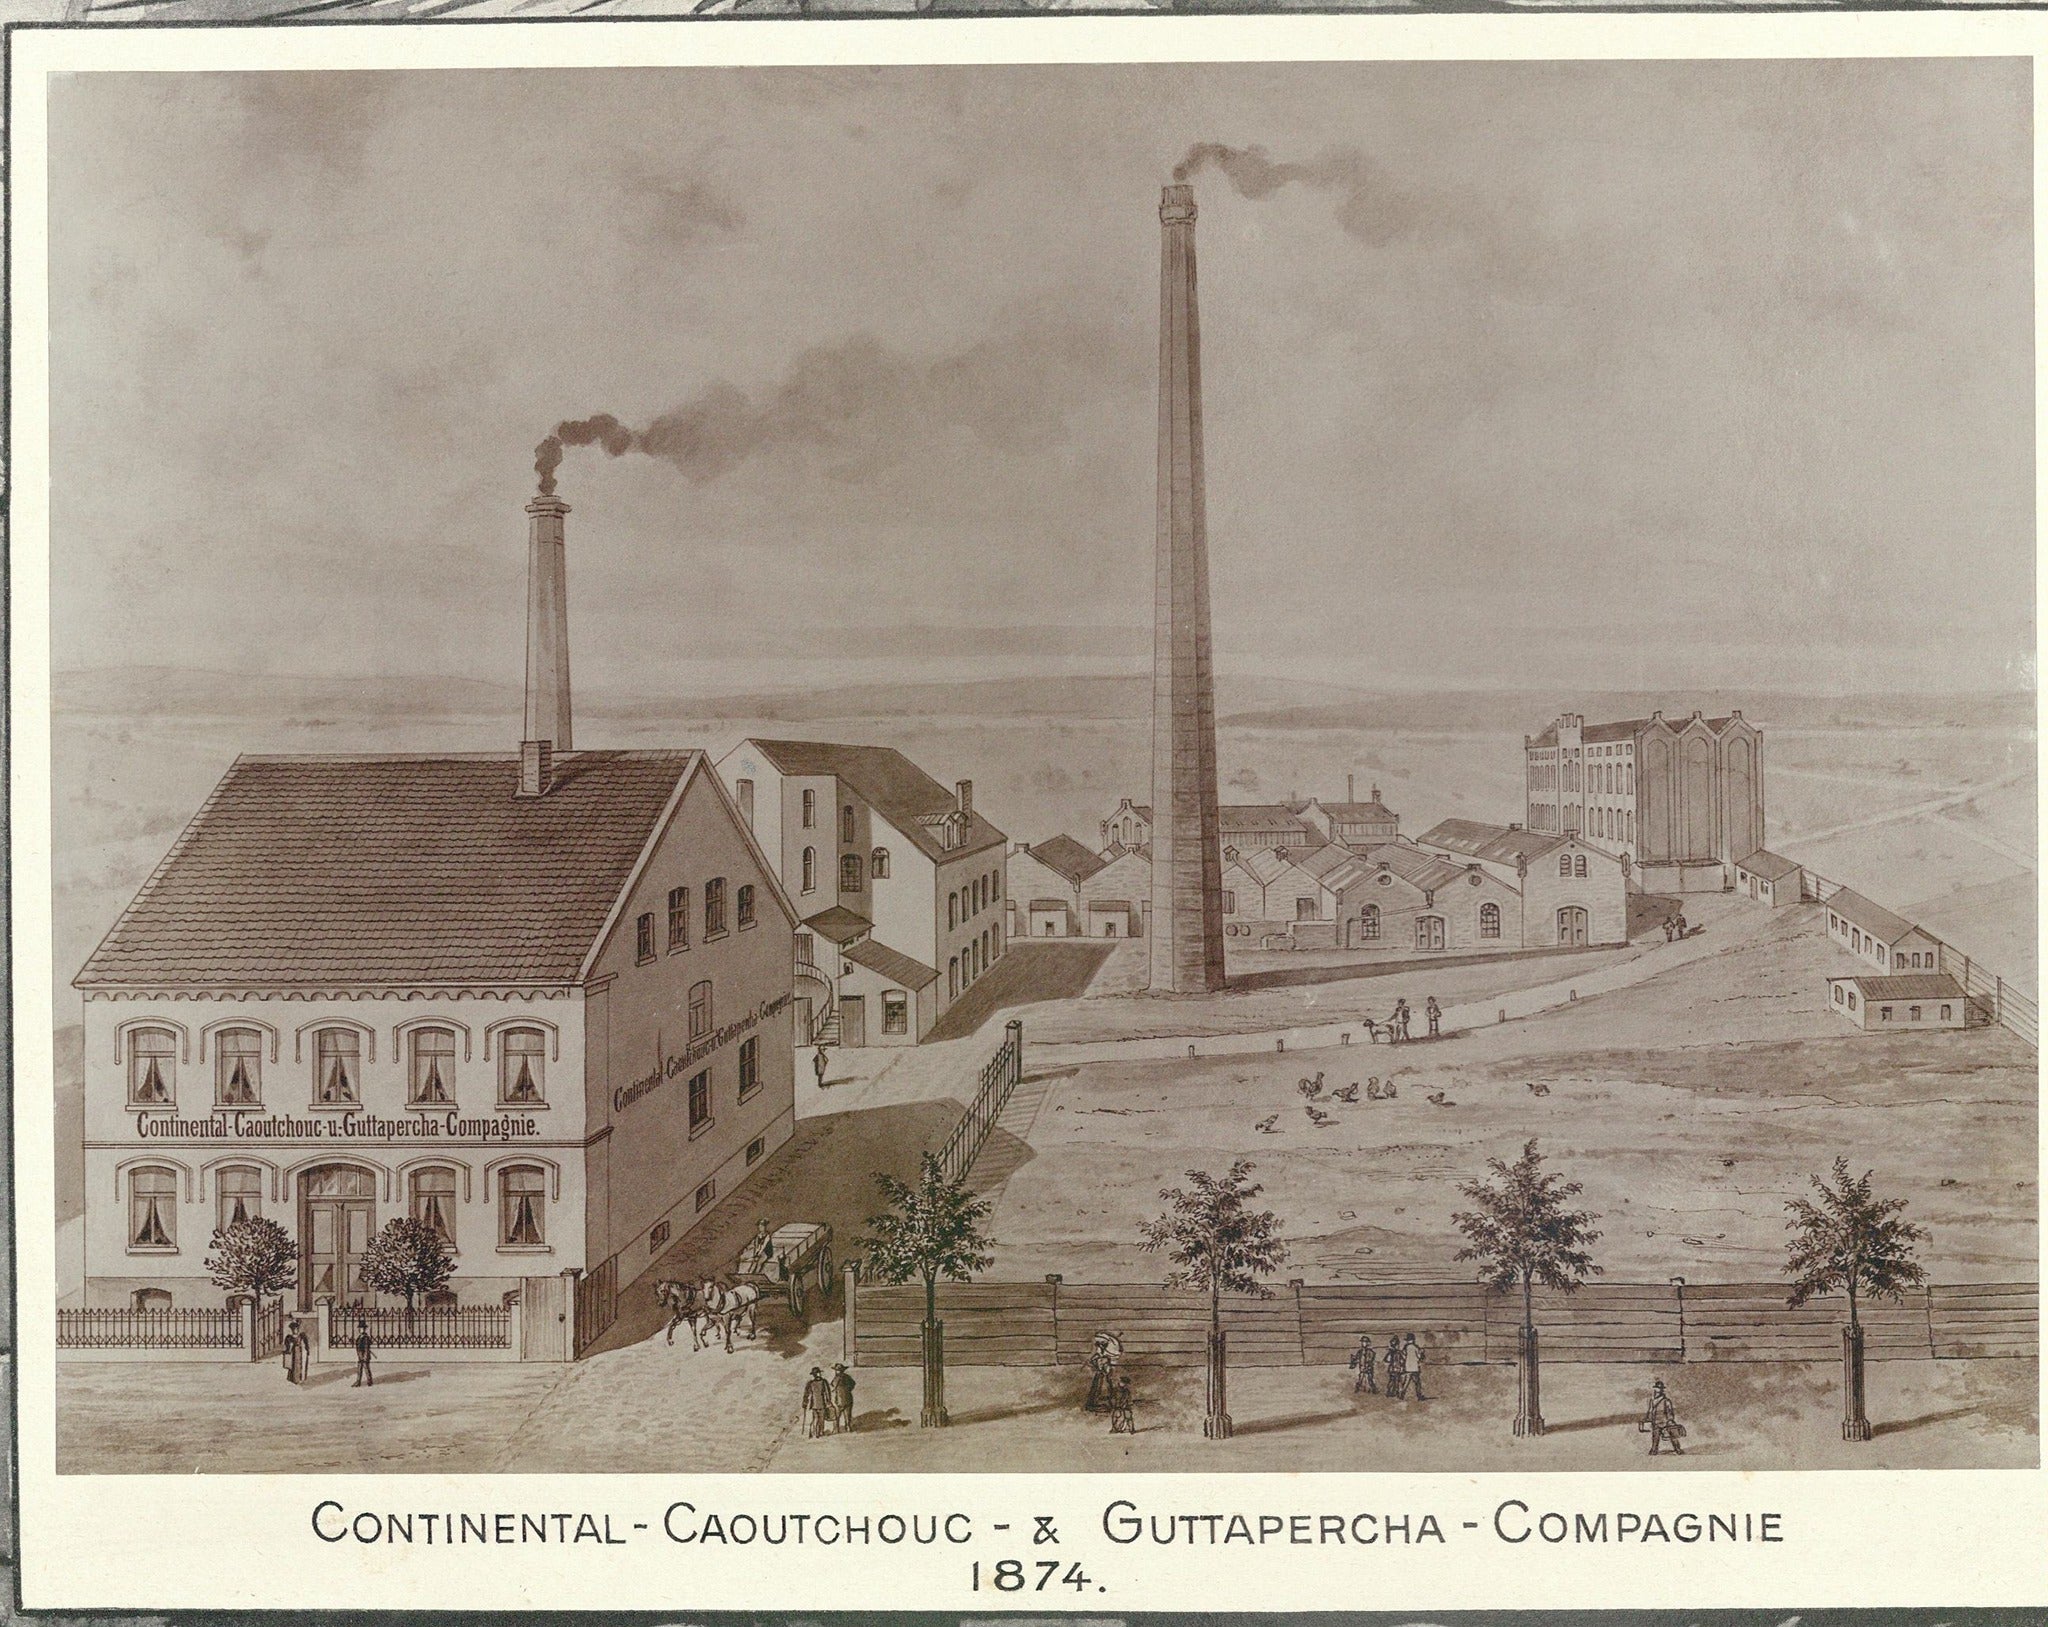 Spalio 8 d. Hanoveryje, likus pusantro dešimtmečio iki pirmojo automobilio pagaminimo, įkuriama „Continental Caoutchouc & Gutta-Percha“ kompanija. Gaminius sudaro guminiai lietpalčių audiniai, karšto vandens buteliai ir tvirtos dviračių ir vežimų padangos. Hanoveris yra šurmuliuojantis pramonės centras su inžinerinėmis gamyklomis, audimo ir tekstilės gamyklomis ir net prabangiomis šokoladinėmis. Dar 1843 m. miestas su likusia Vokietijos dalimi buvo sujungtas tiesiogine geležinkelio linija.